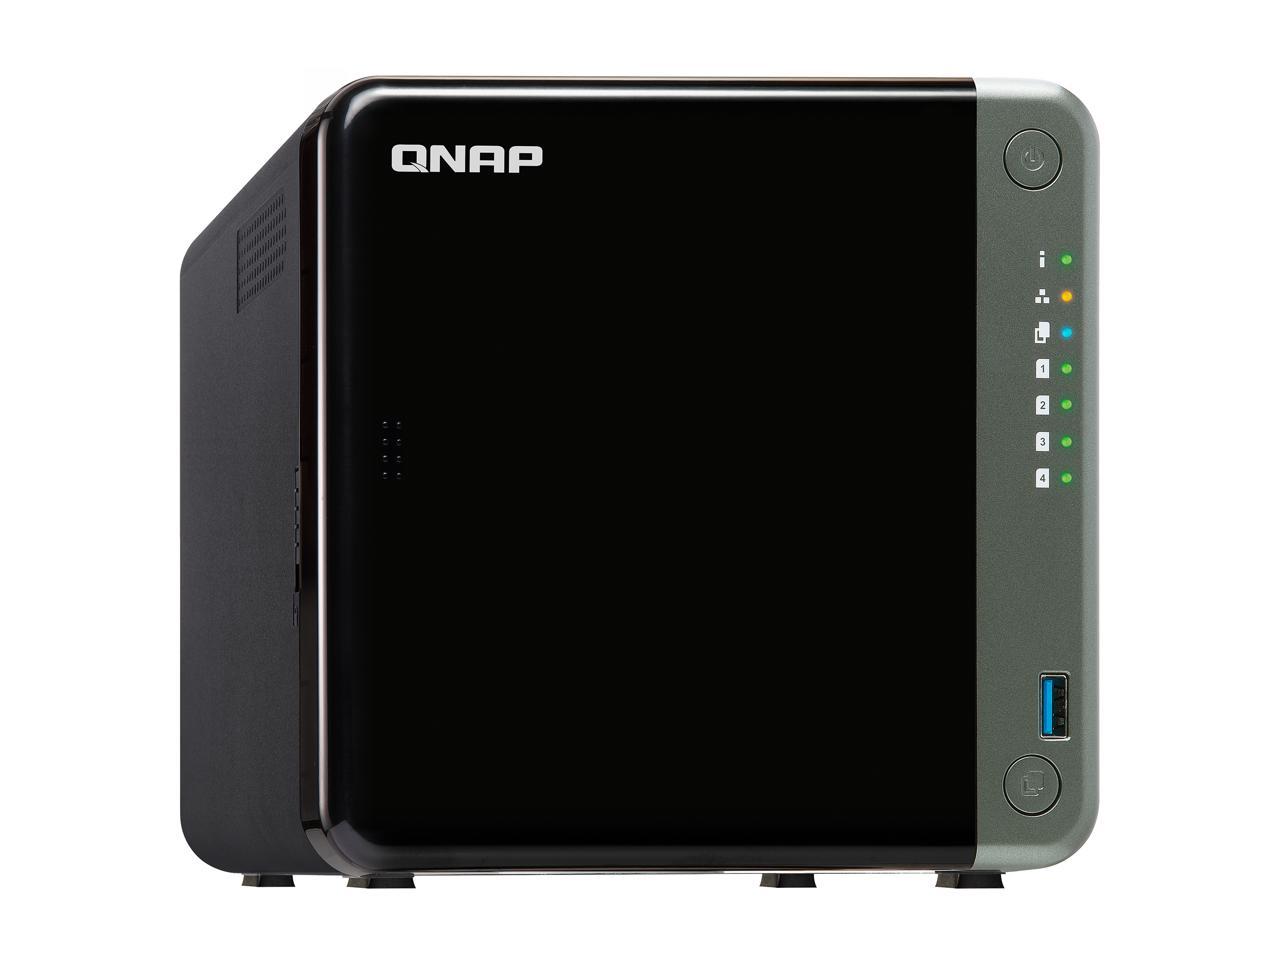 QNAP TS-453D-4G-US